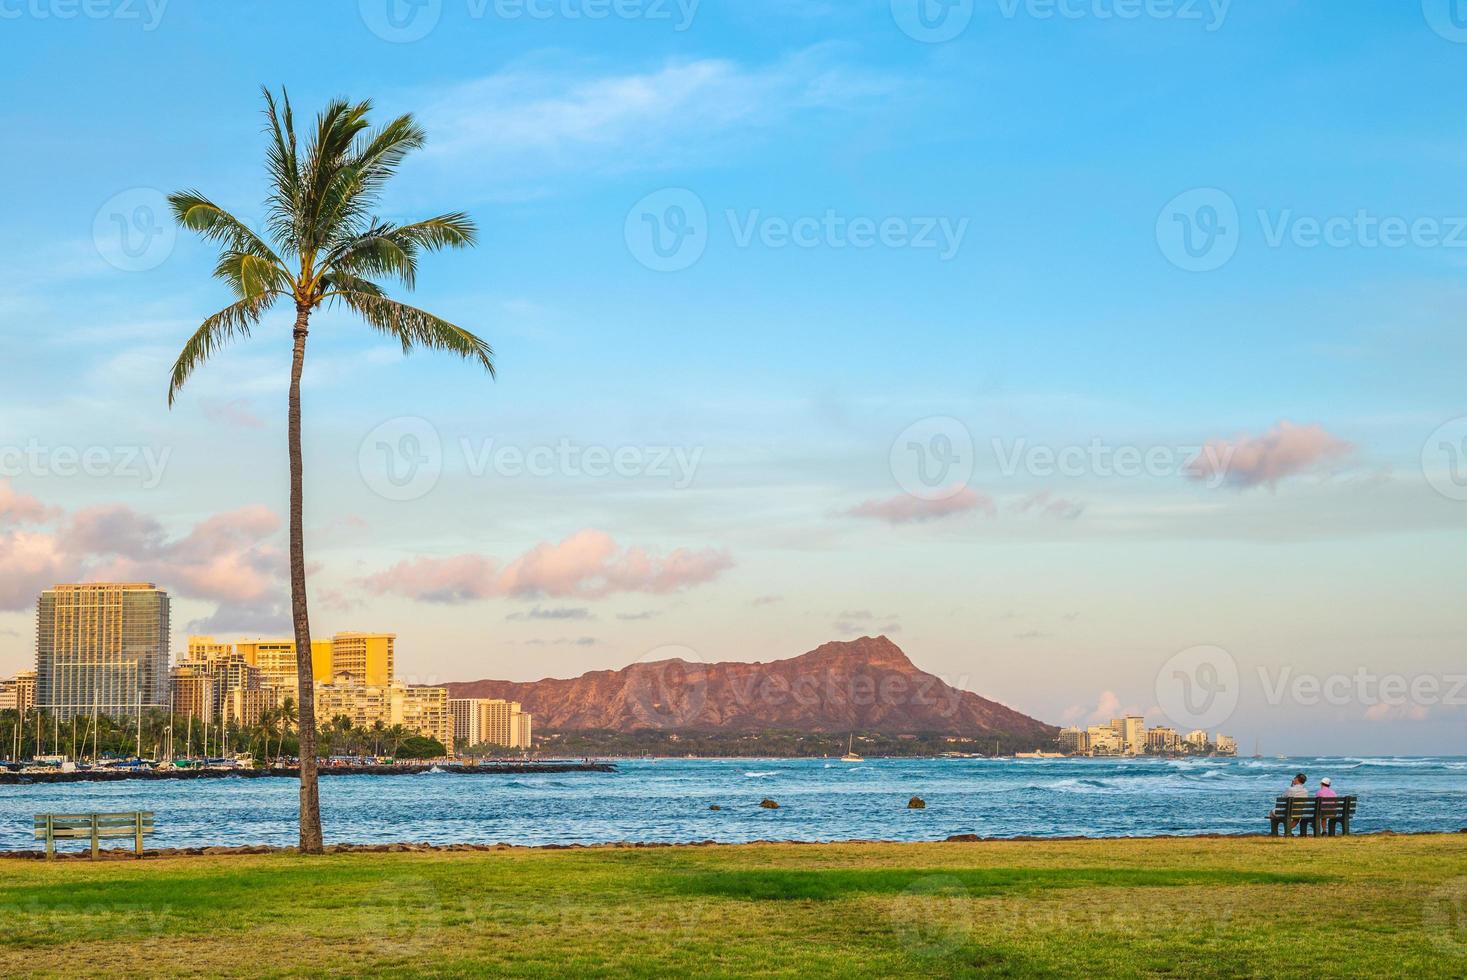 paisaje urbano de honolulu en la isla de oahu, hawai, nosotros foto